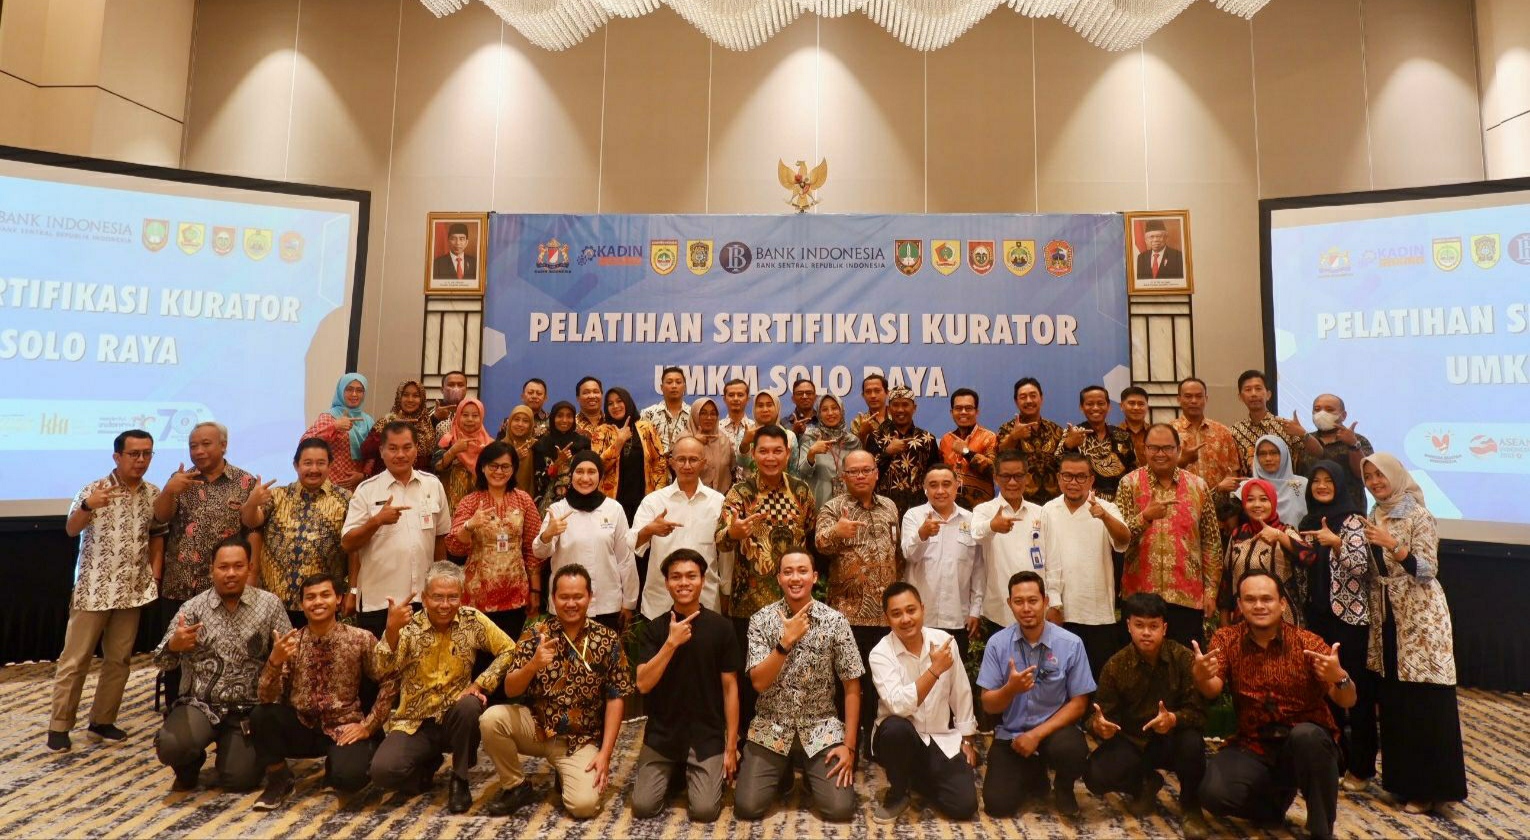 Gandeng Kadin Institut, Bank Indonesia Solo Gelar Pelatihan Sertifikasi Kurator, Ini Tujuannya